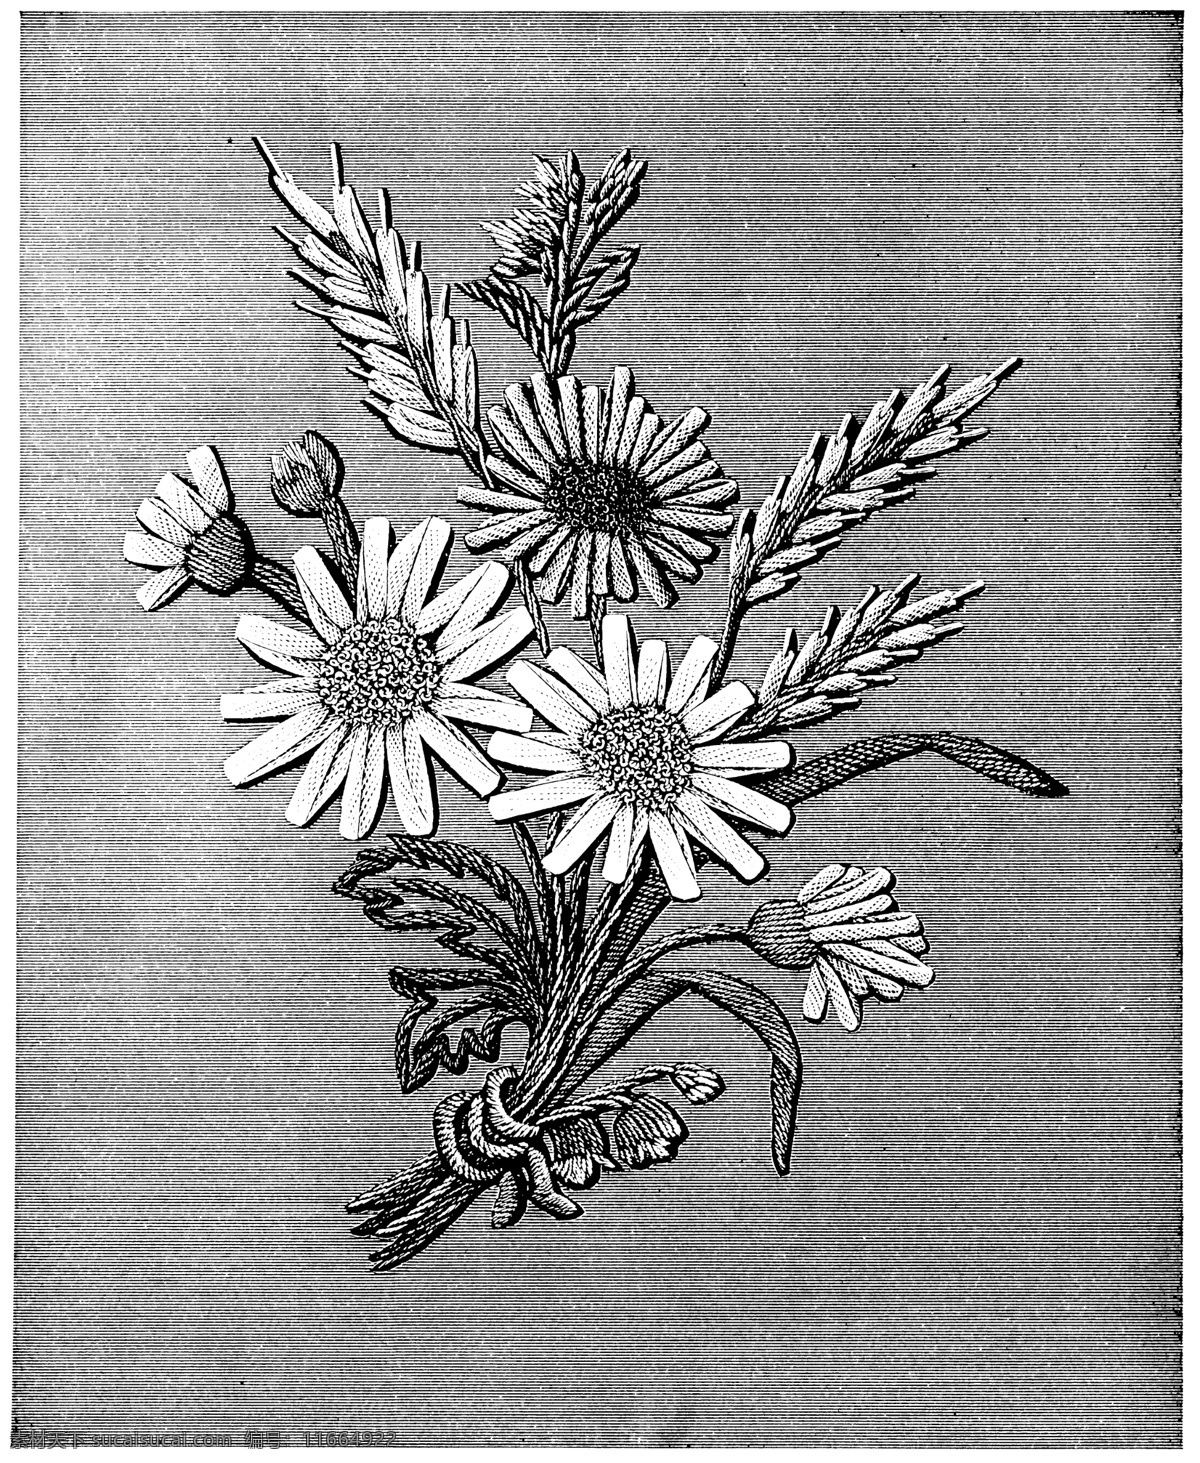 黑白 花边 植物 纹样 线条 花卉 服装边饰 刺绣 菊花 传统文化 文化艺术